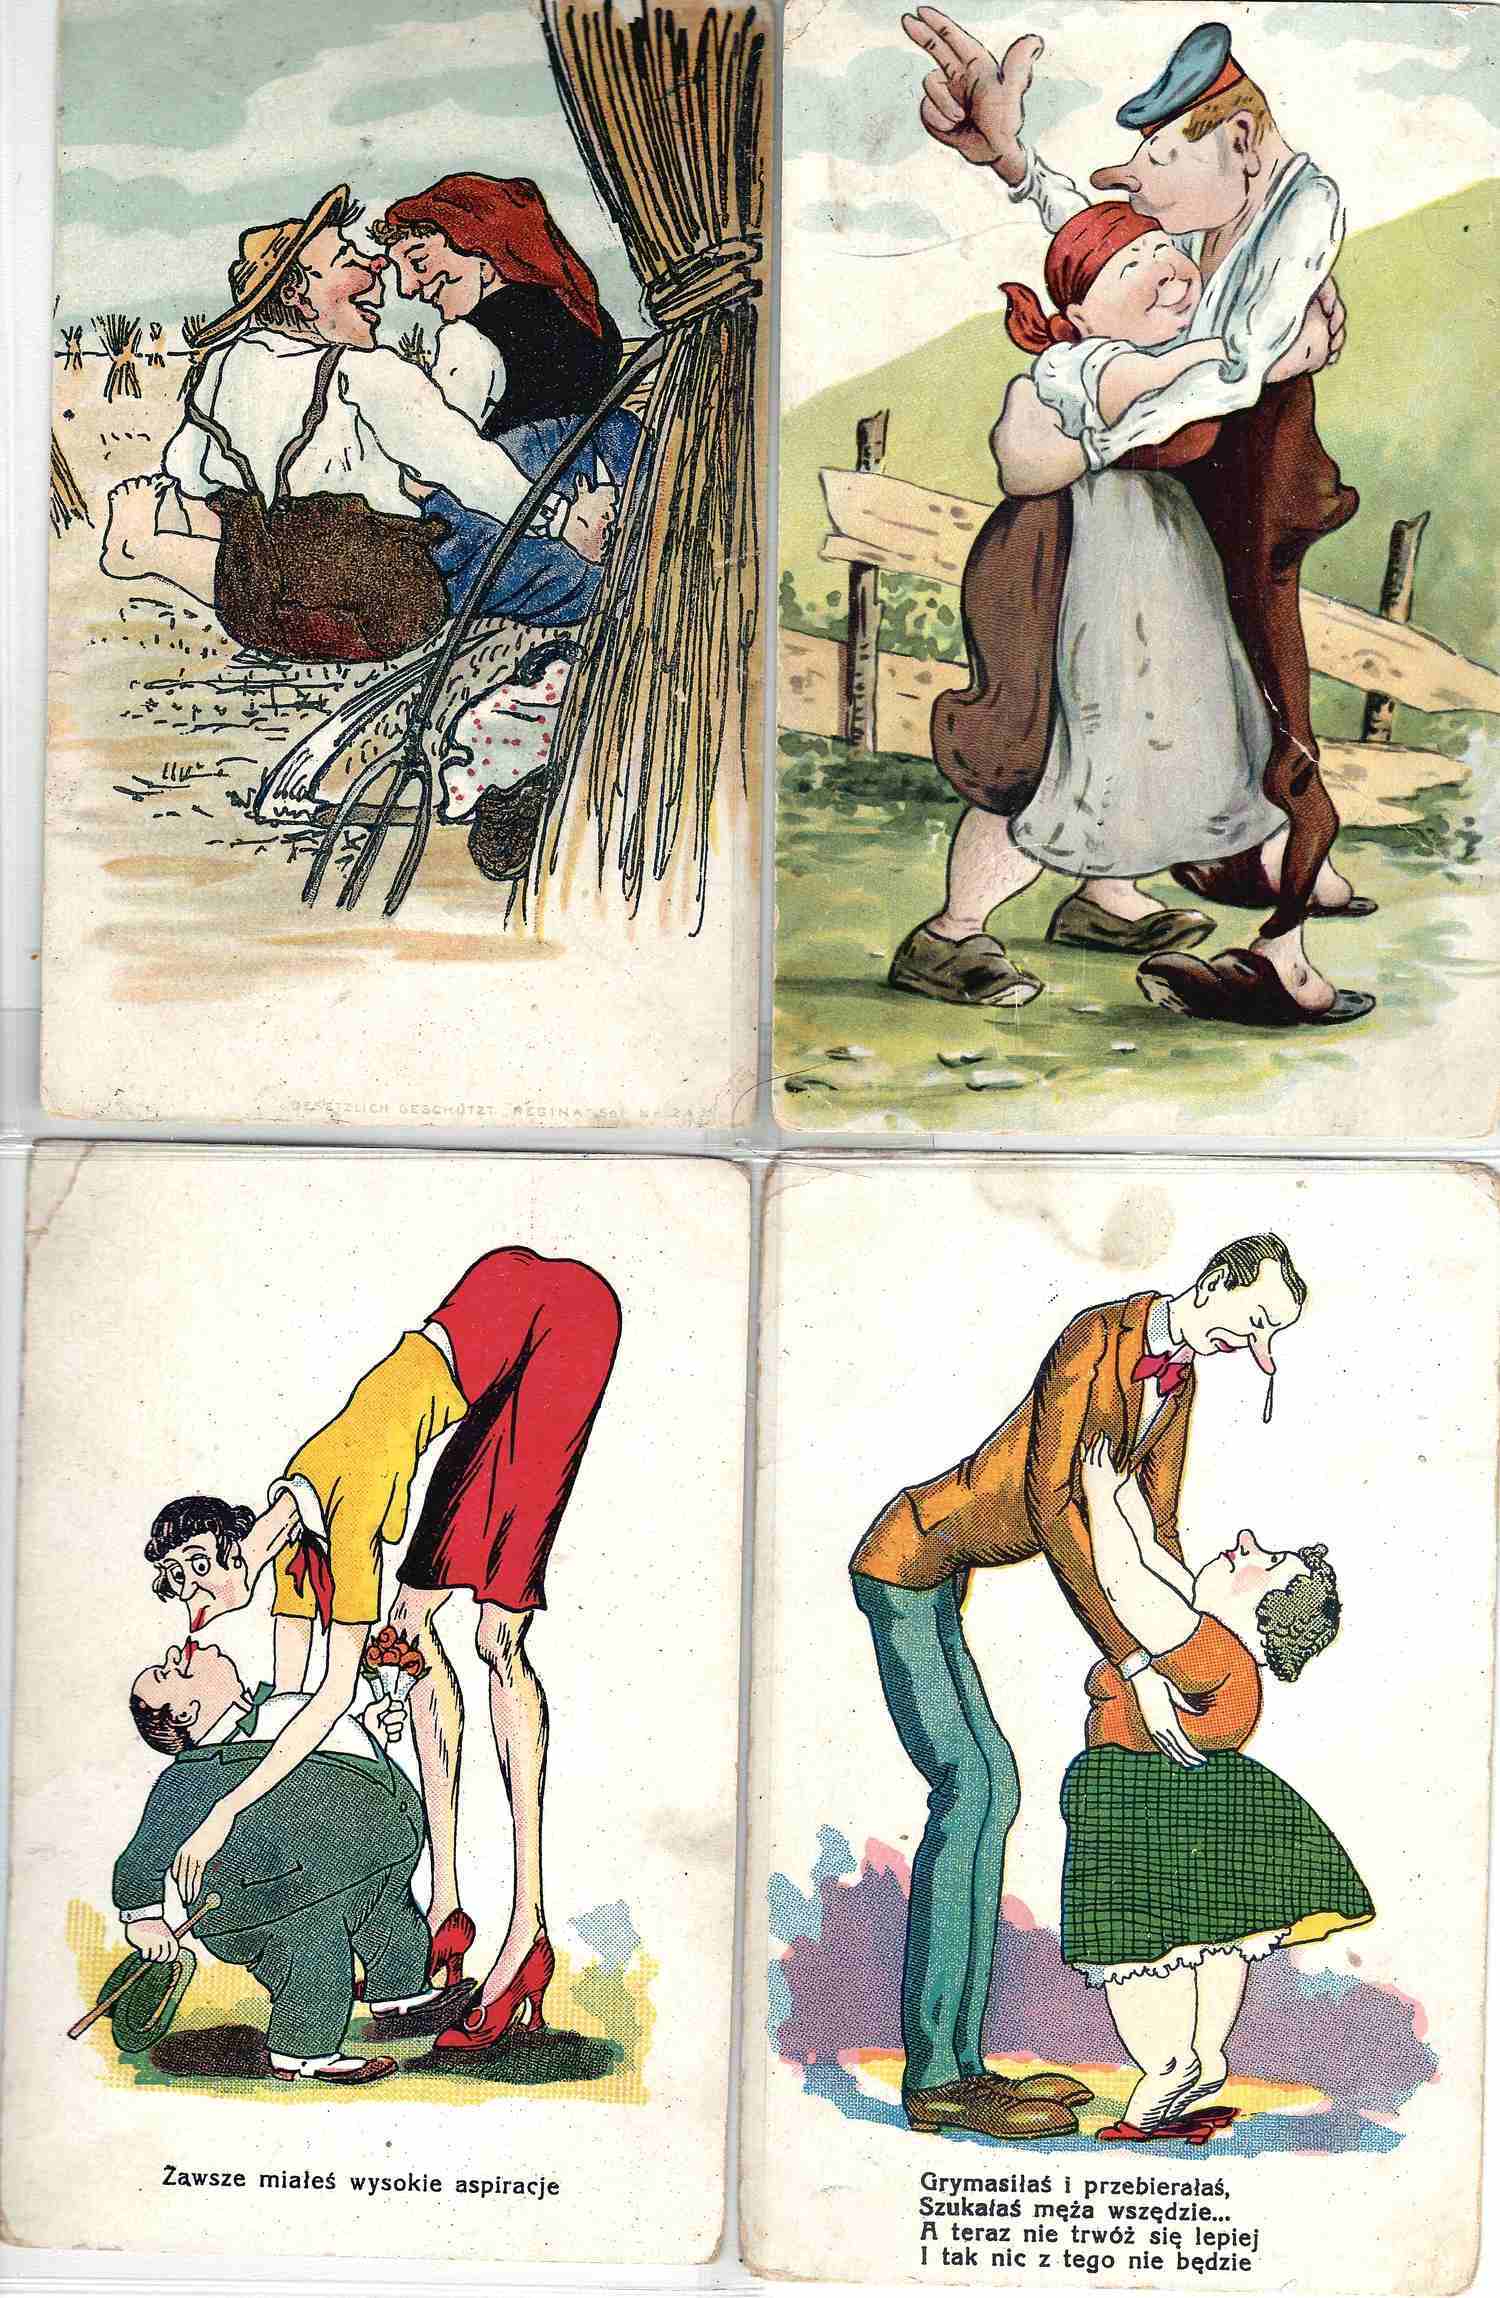 24 юмористические открытки «Он и она». Зап. Европа, первая треть XX века.